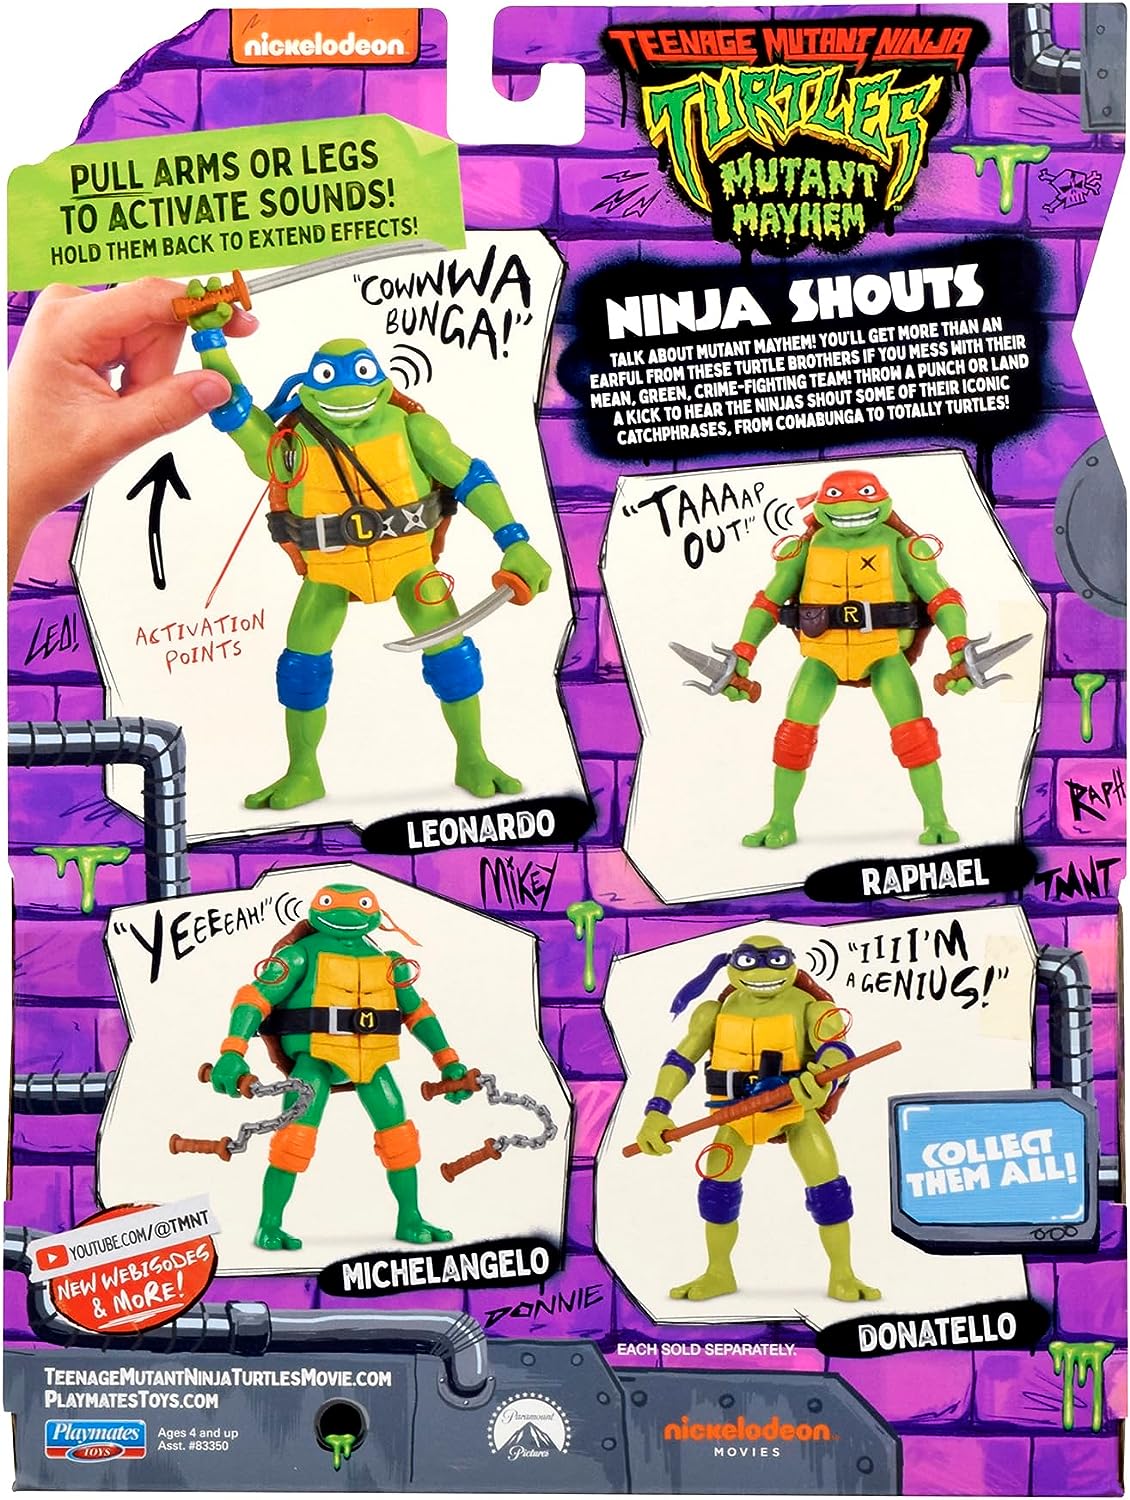 Teenage Mutant Ninja Turtle - Ninja Shouts - Raphael